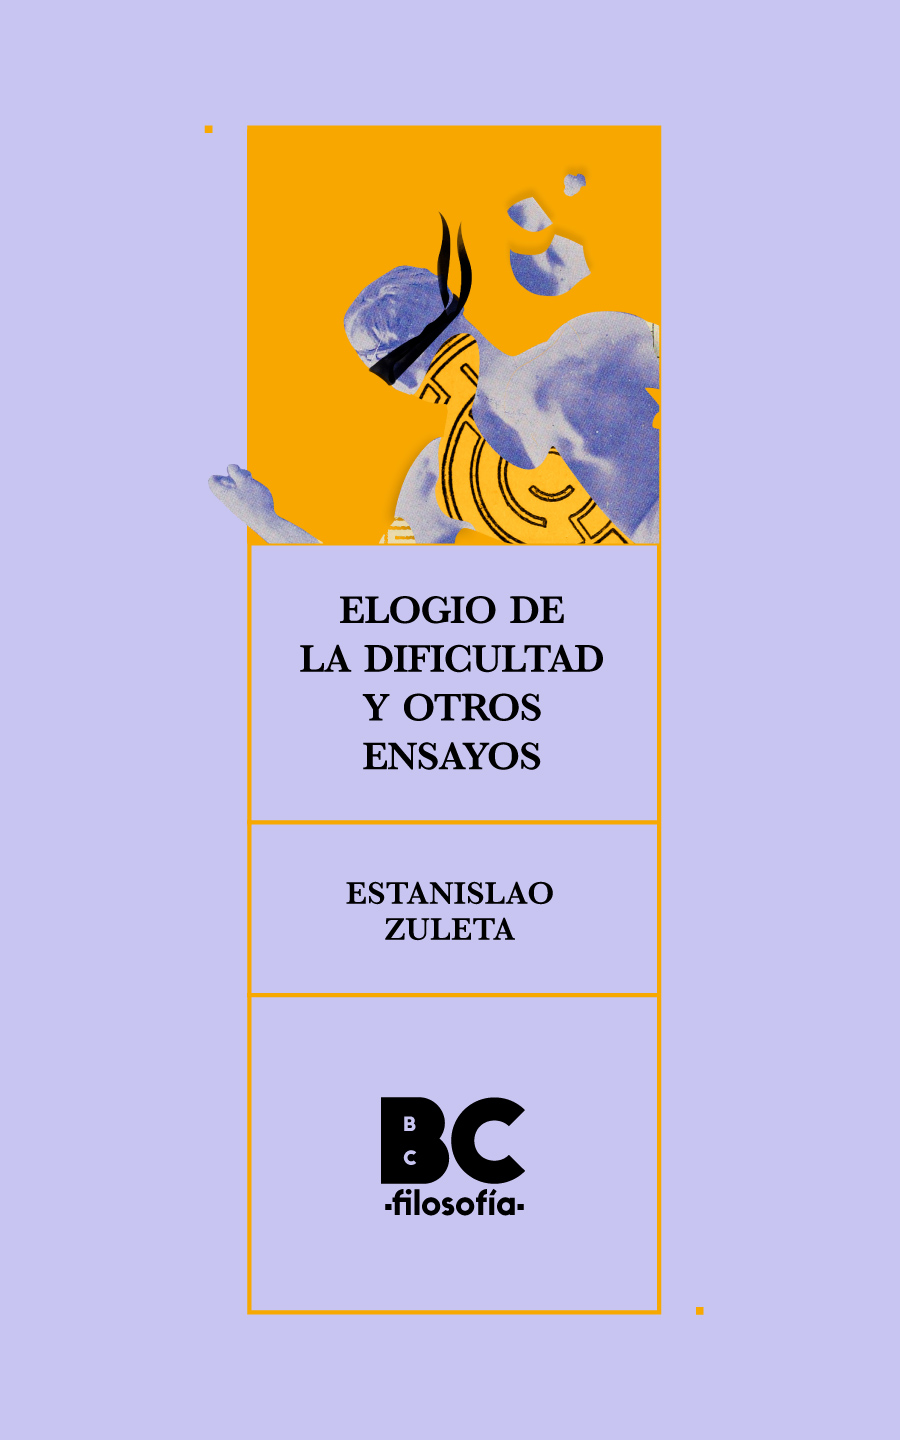 Catalogación en la publicación Biblioteca Nacional de Colombia Zuleta - photo 2